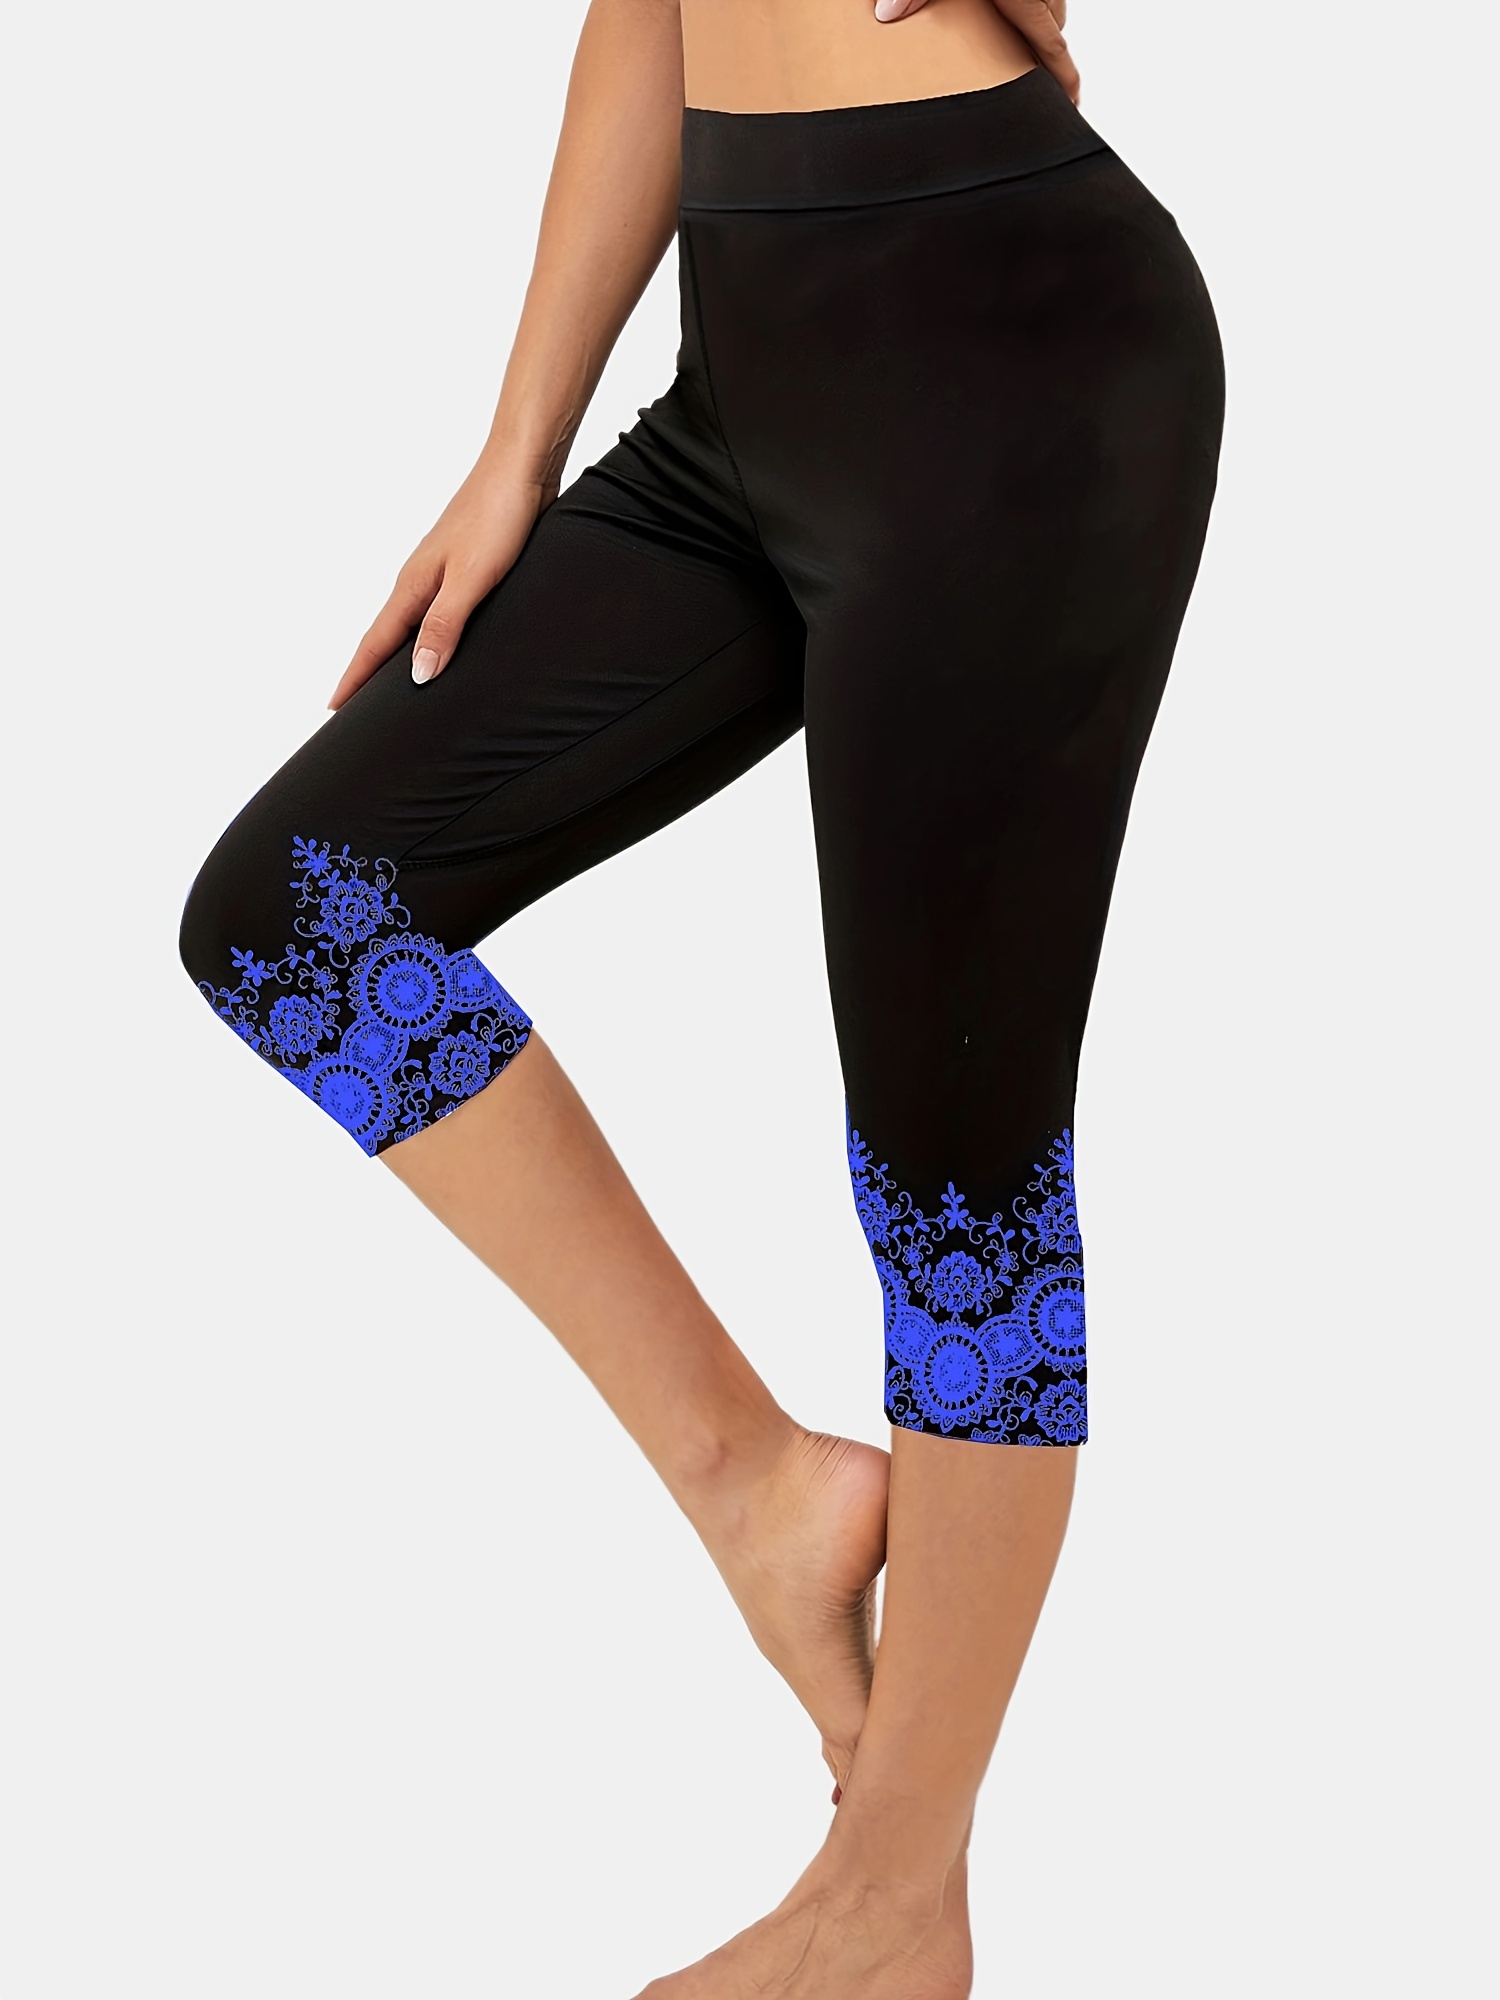 Blue Patterned Women's Capri Yoga Pants